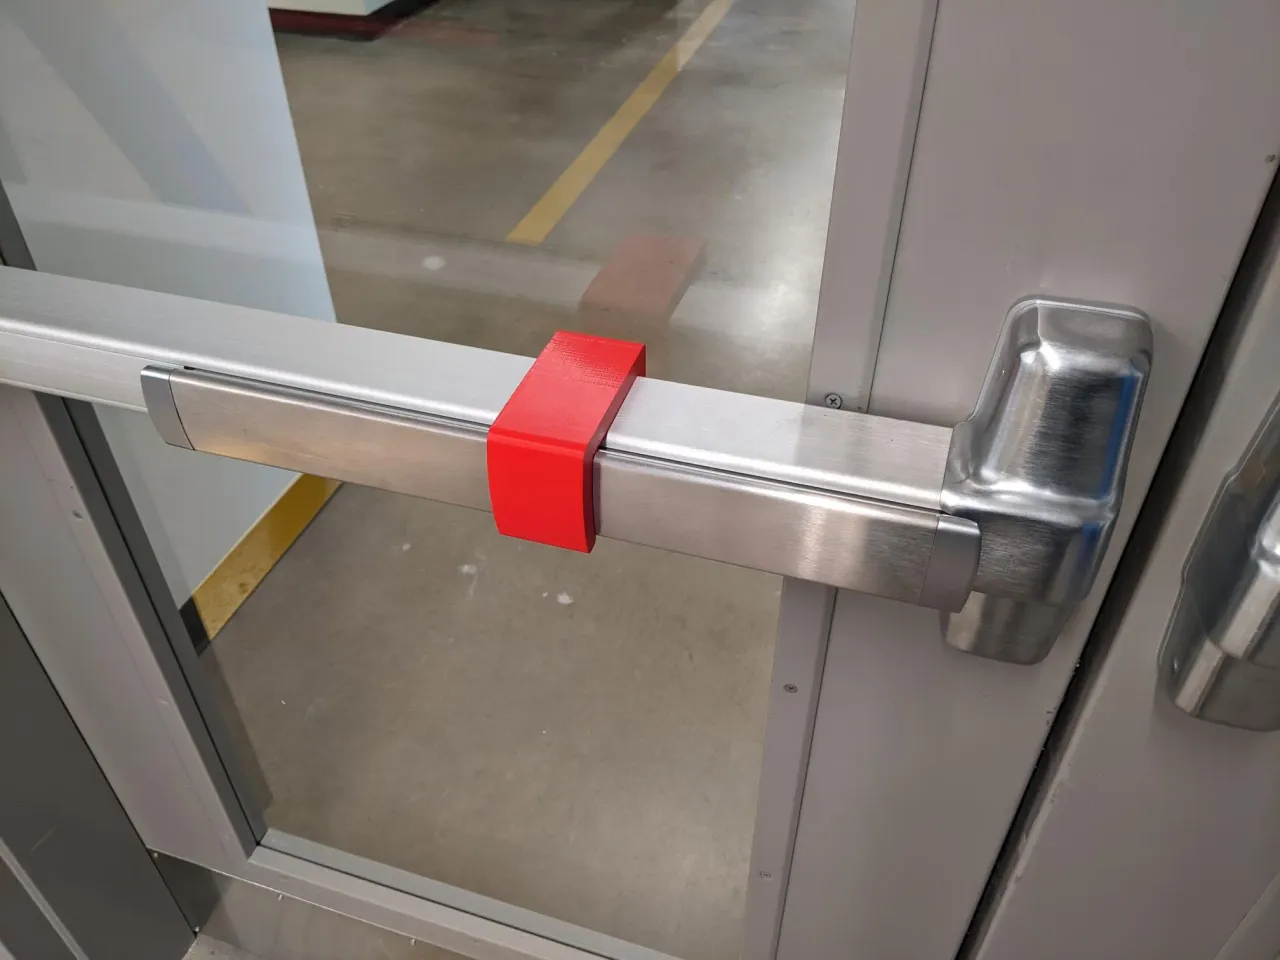 push door handles